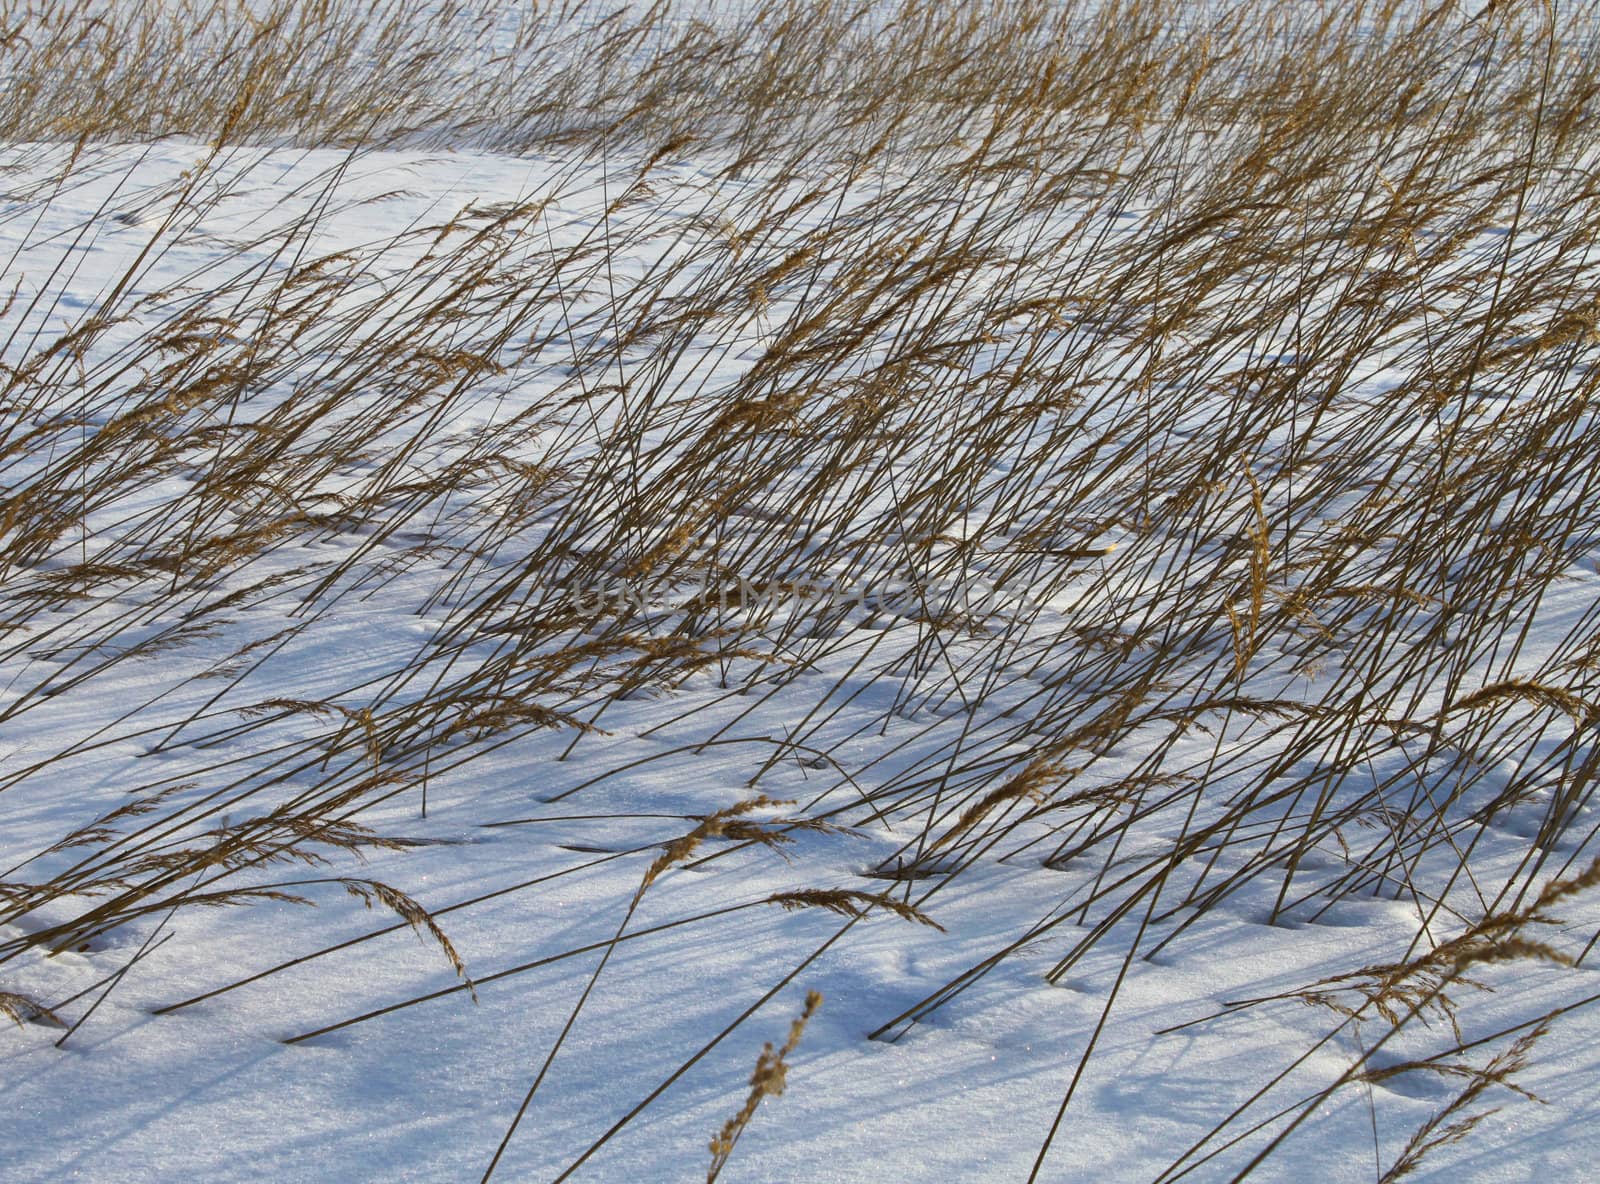 Reeds in winter snow by anterovium